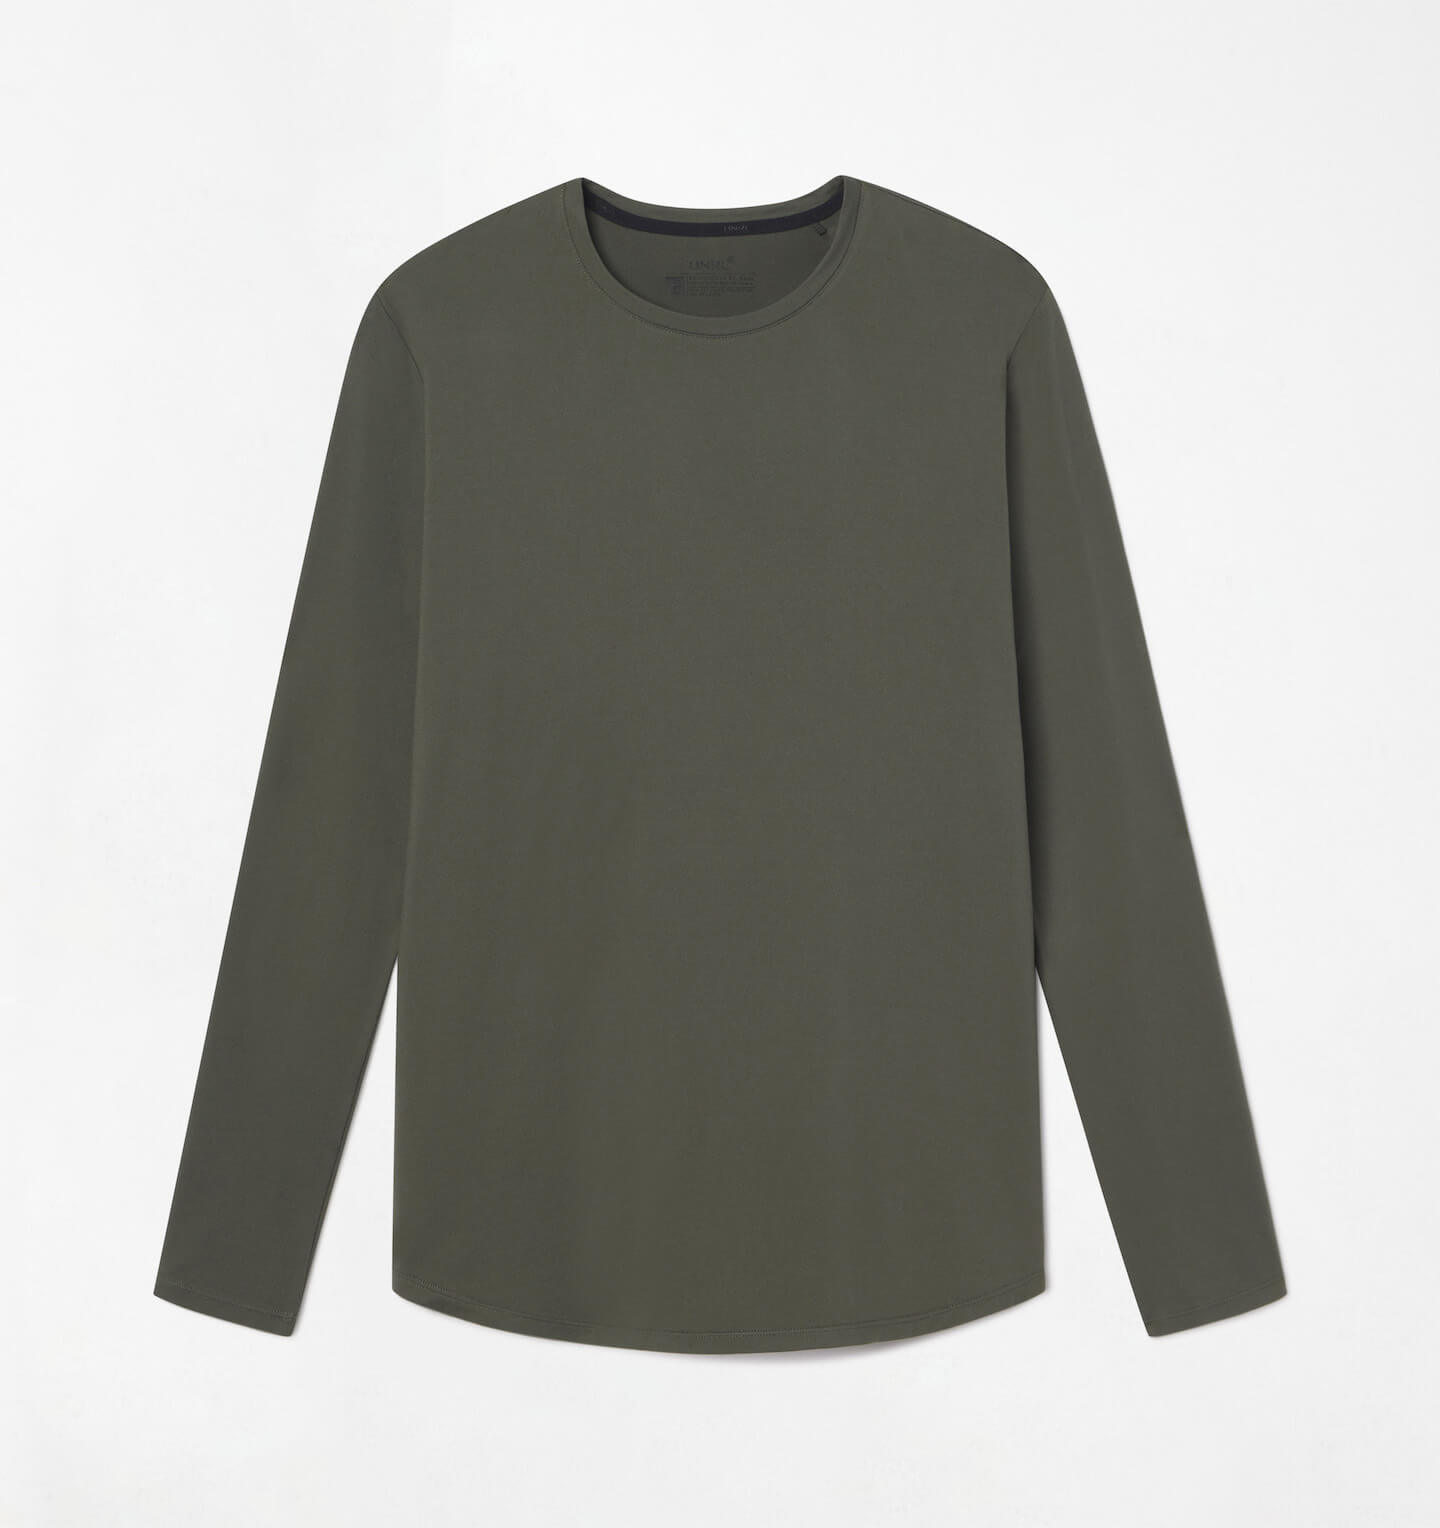 Long Sleeve Tops - Designer Shirts & Blouses For Women